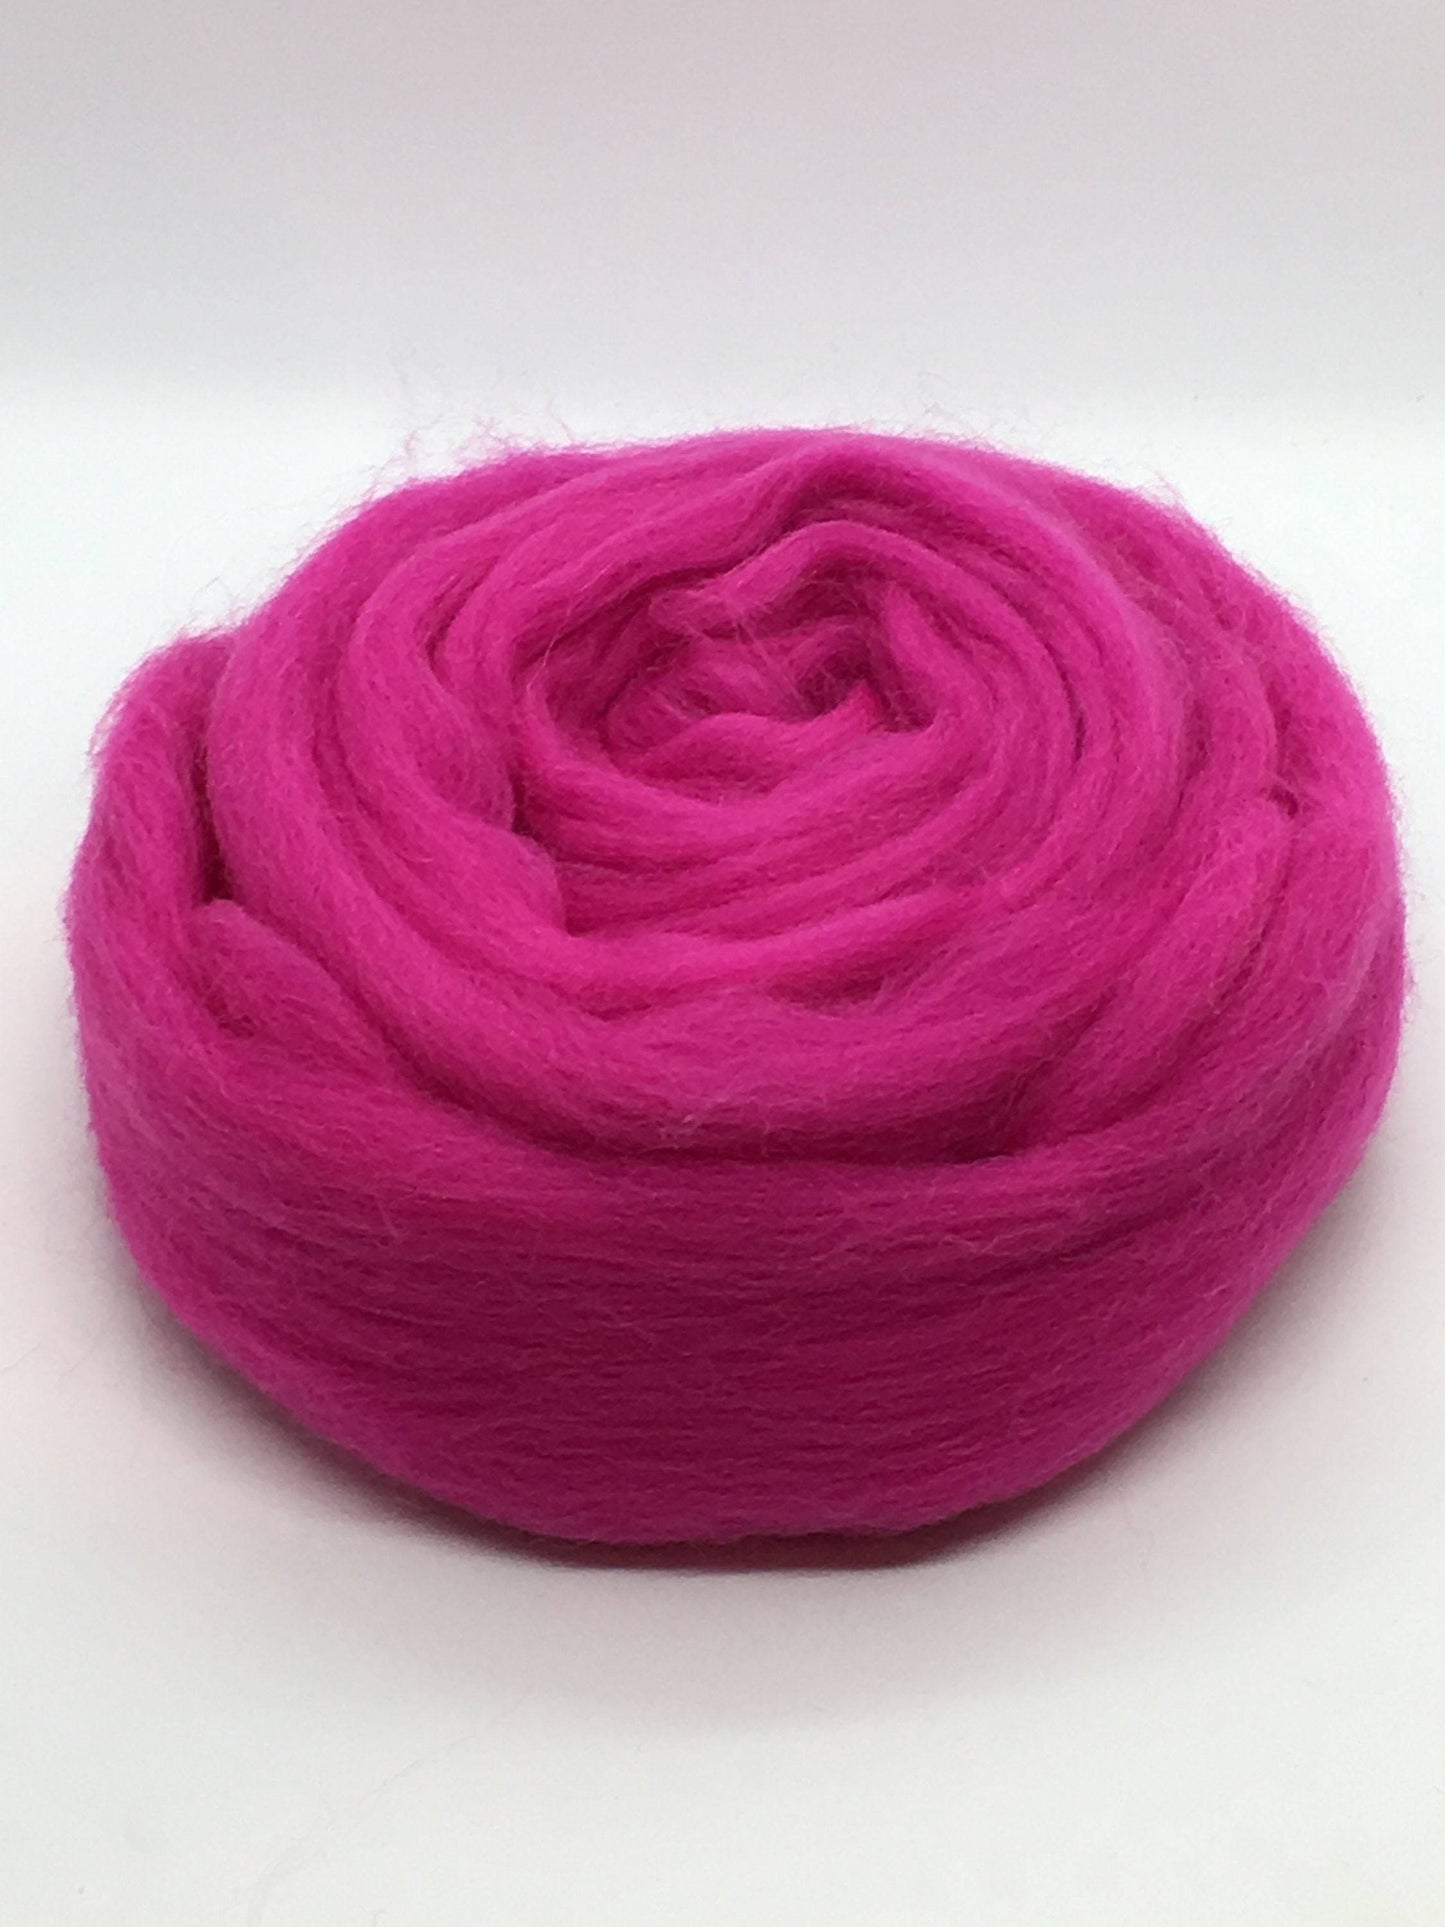 Hot Pink Wool Merino Top Roving - Spin into Yarn, Needle Felt, Wet Felt, Spinning, Felting, Weaving, Knitting, all Crafts